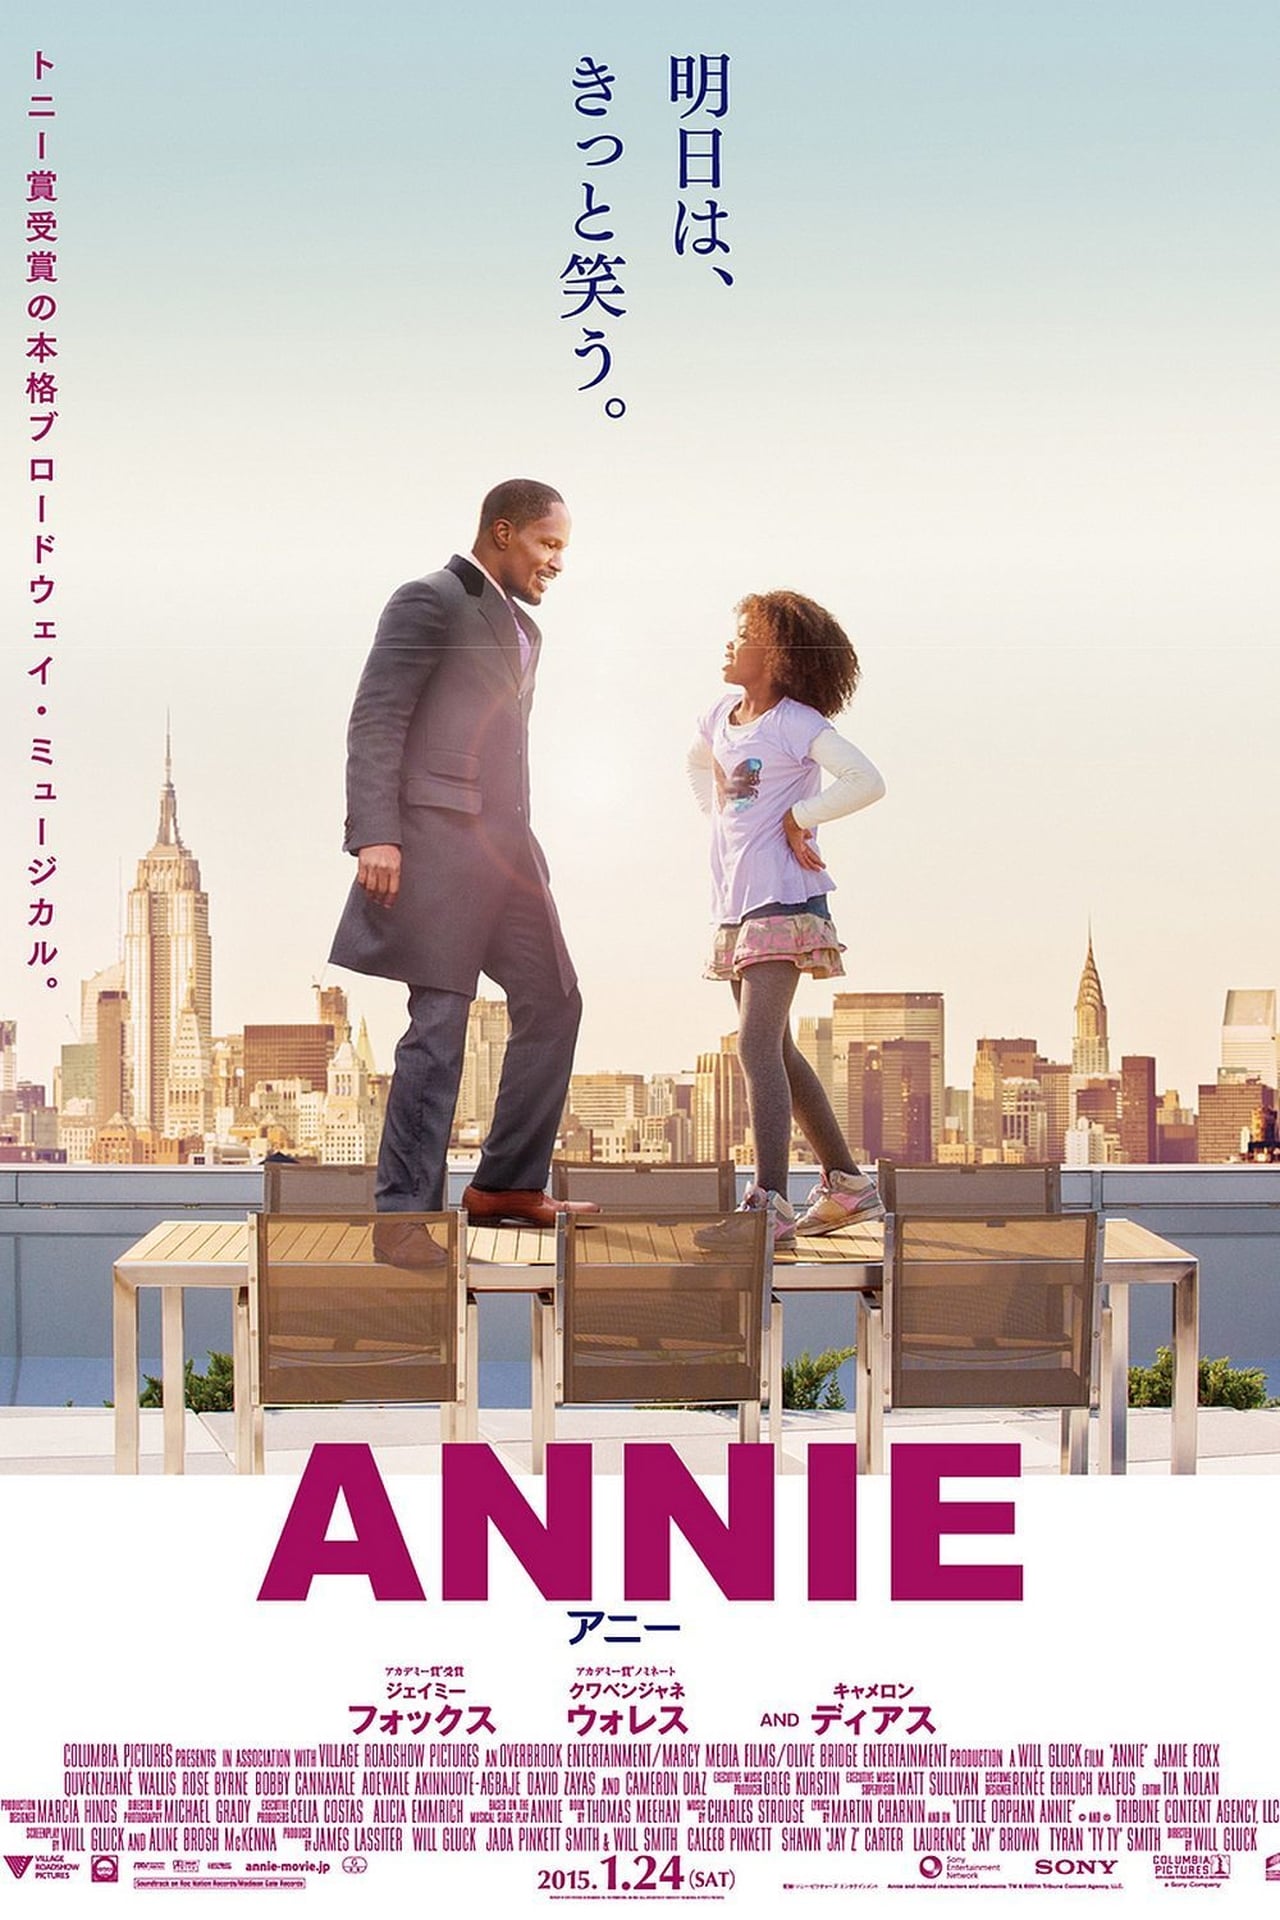 Annie (2014) 384Kbps 23.976Fps 48Khz 5.1Ch DVD Turkish Audio TAC